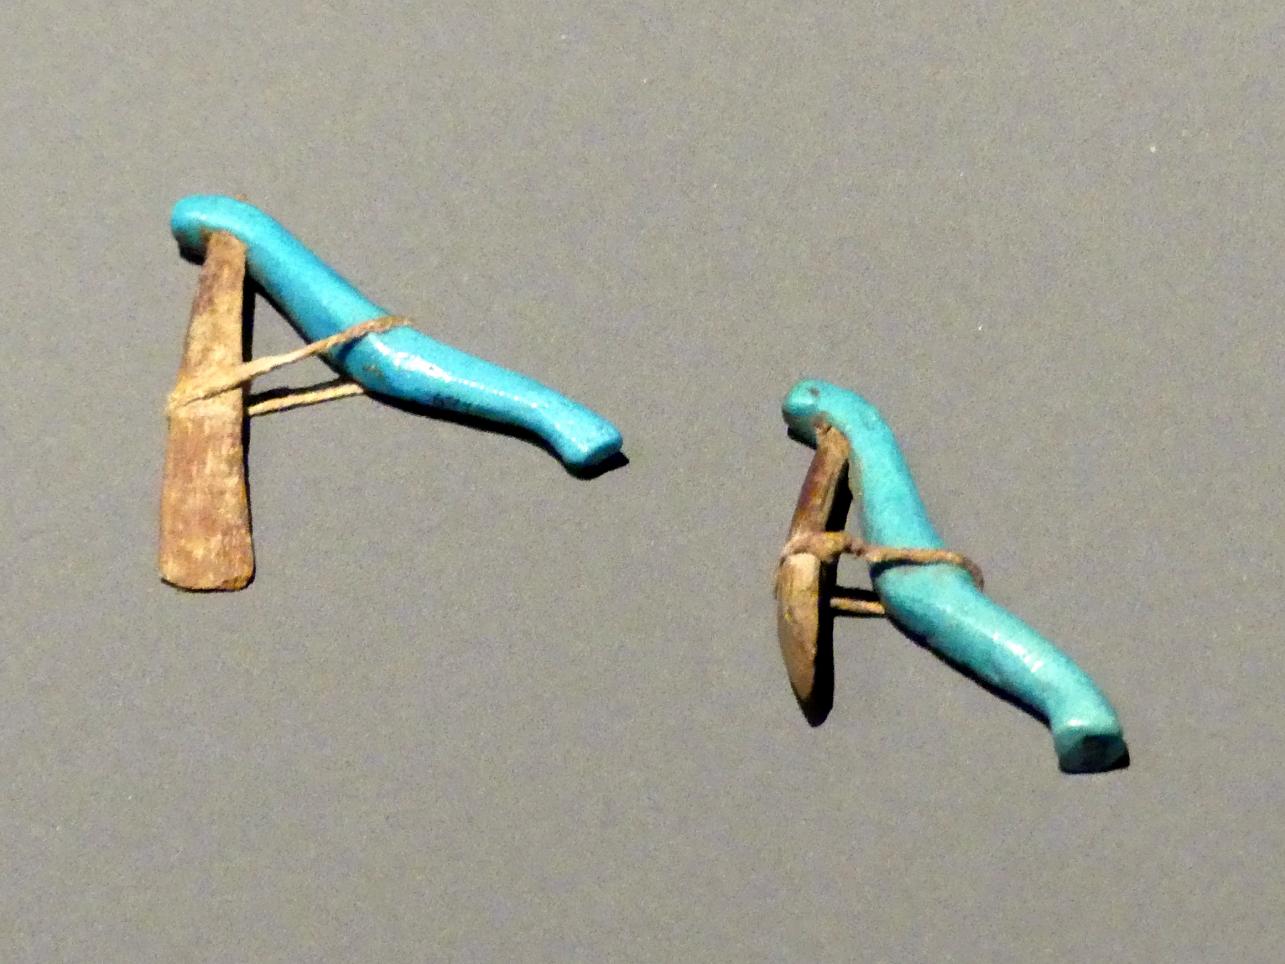 Modelle von Mundöffnungsgeräten, Spätzeit, 360 - 342 v. Chr., 600 - 300 v. Chr., Bild 1/2